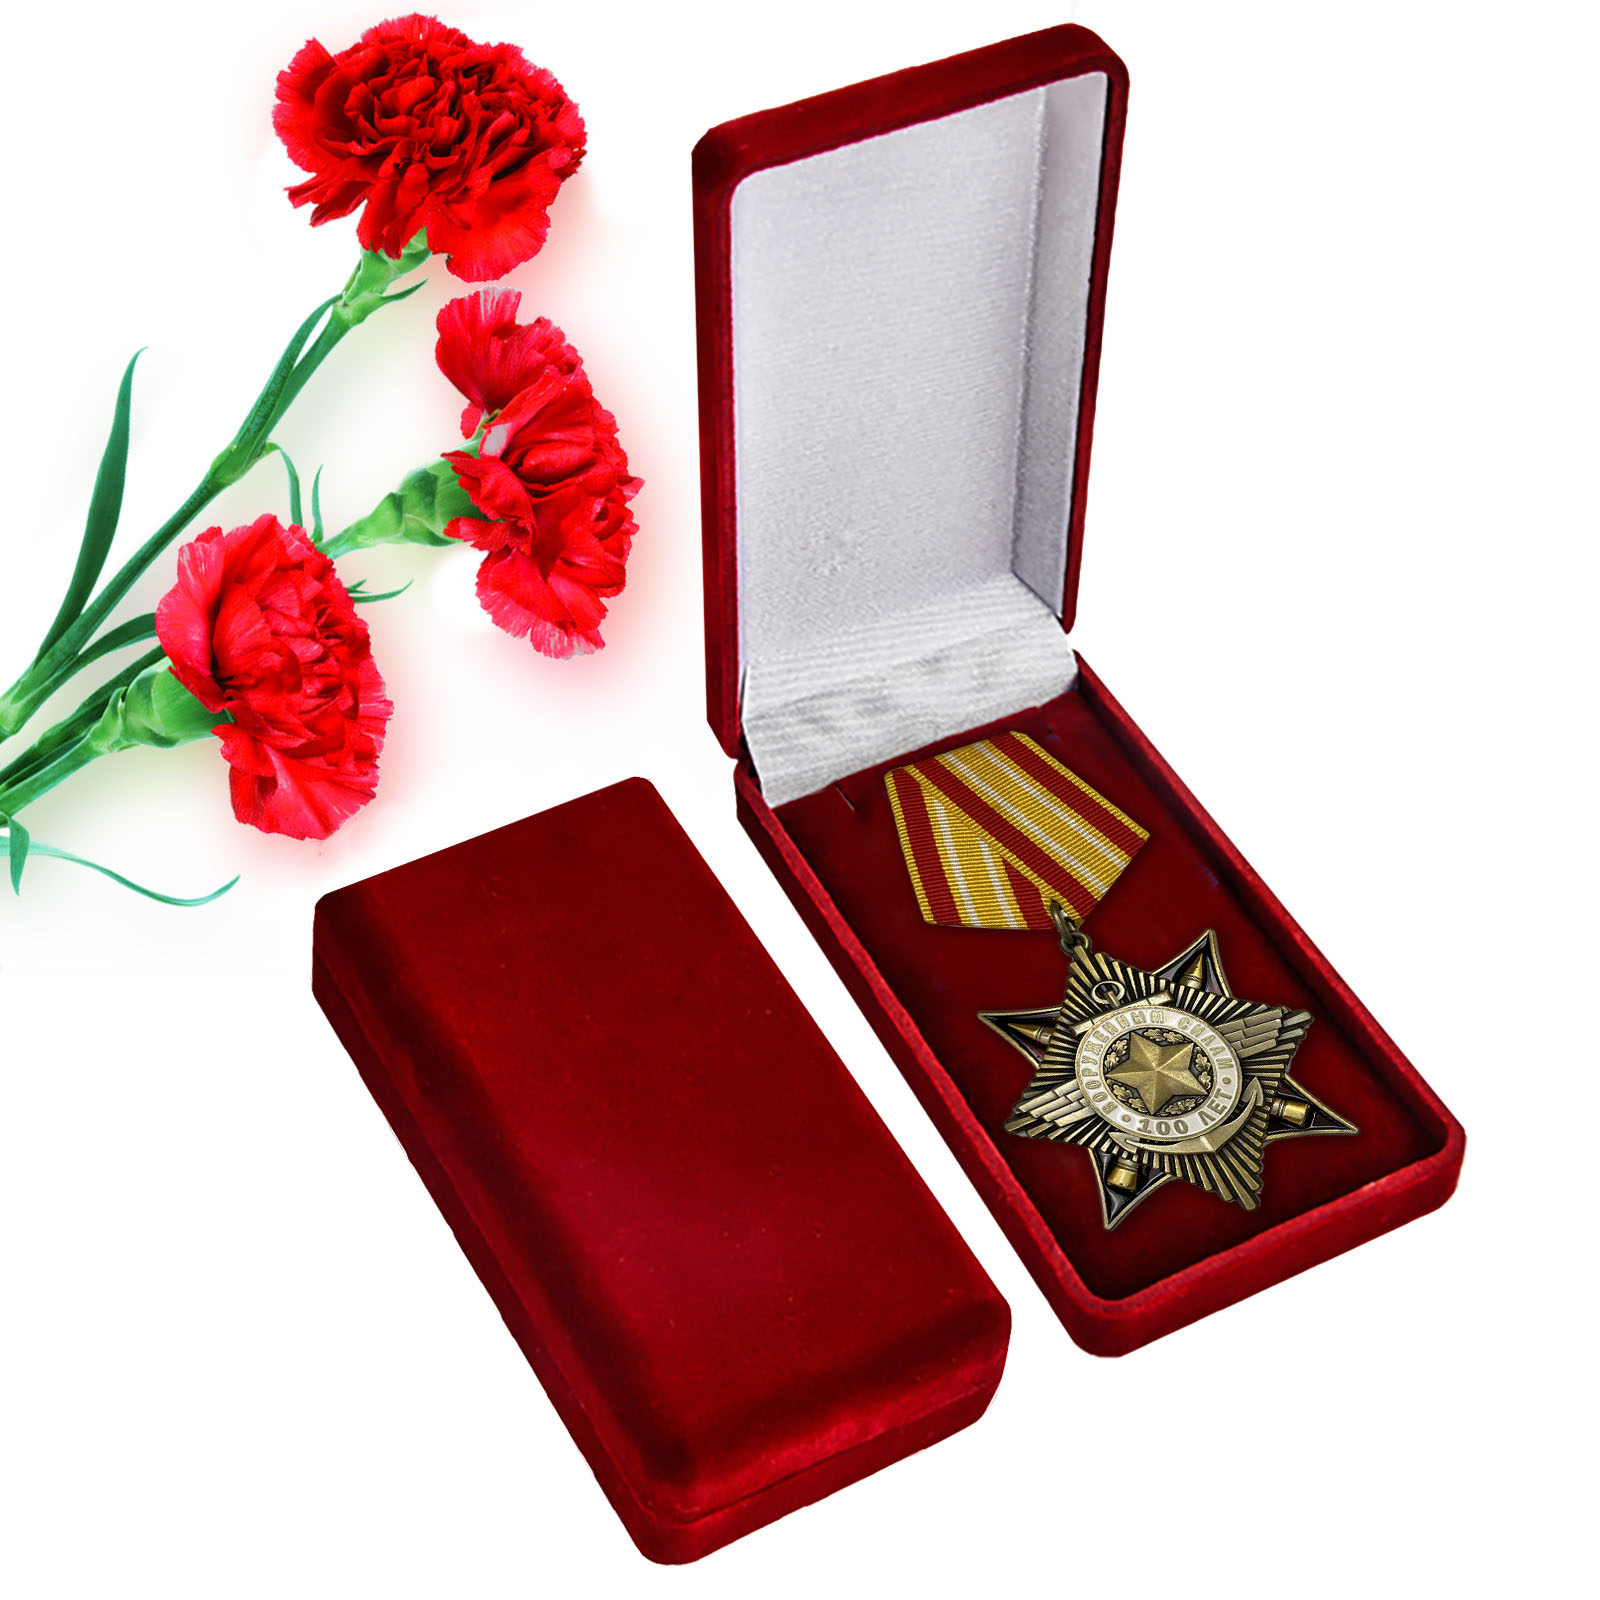 Юбилейный орден "100 лет Вооруженным Силам" в футляре